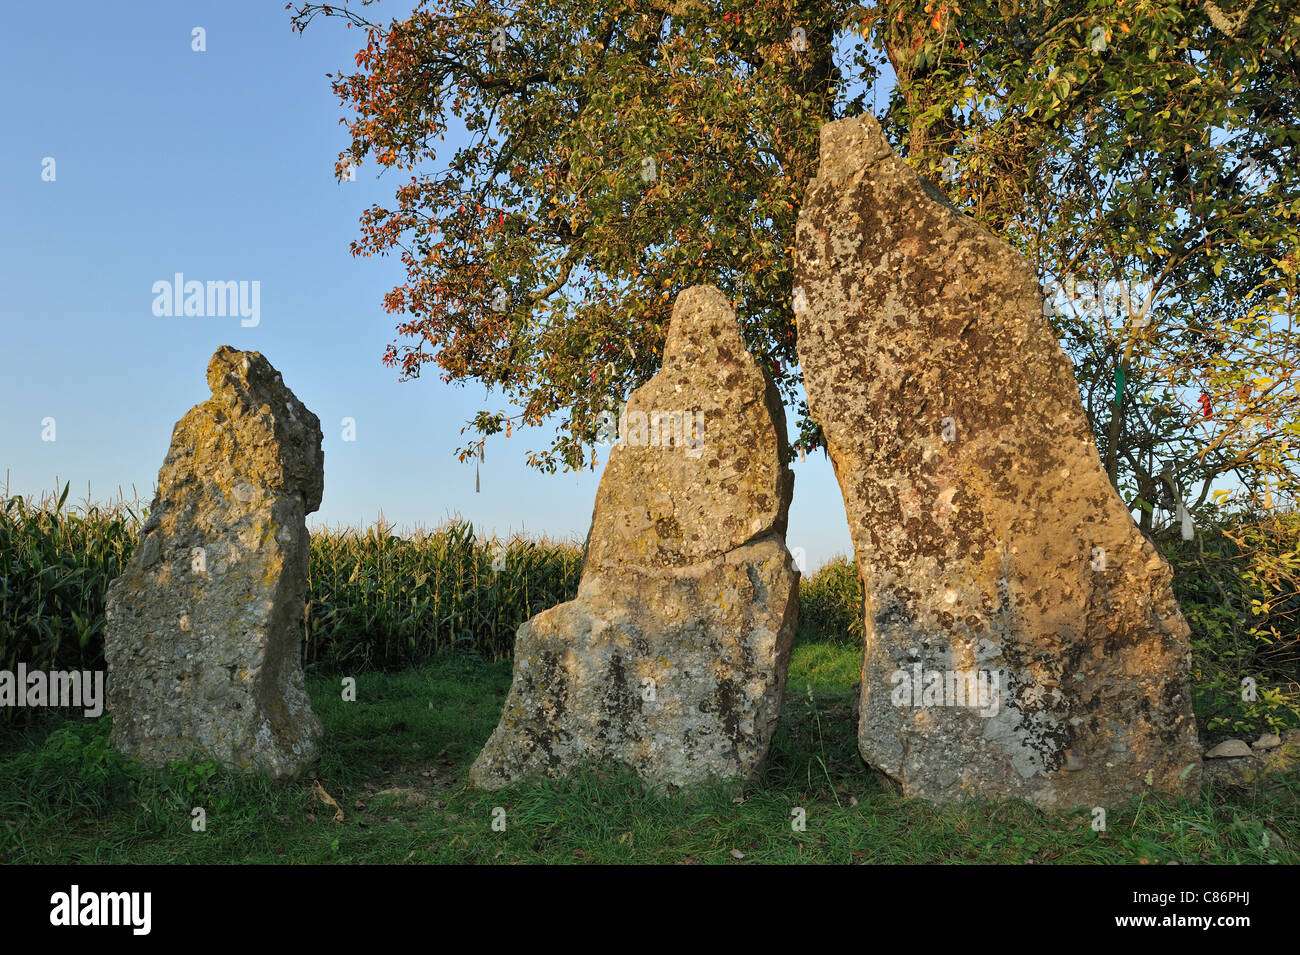 Trois pierres mégalithiques / menhirs d'Oppagne près de Wéris, Ardennes Belges, Luxembourg, Belgique Banque D'Images